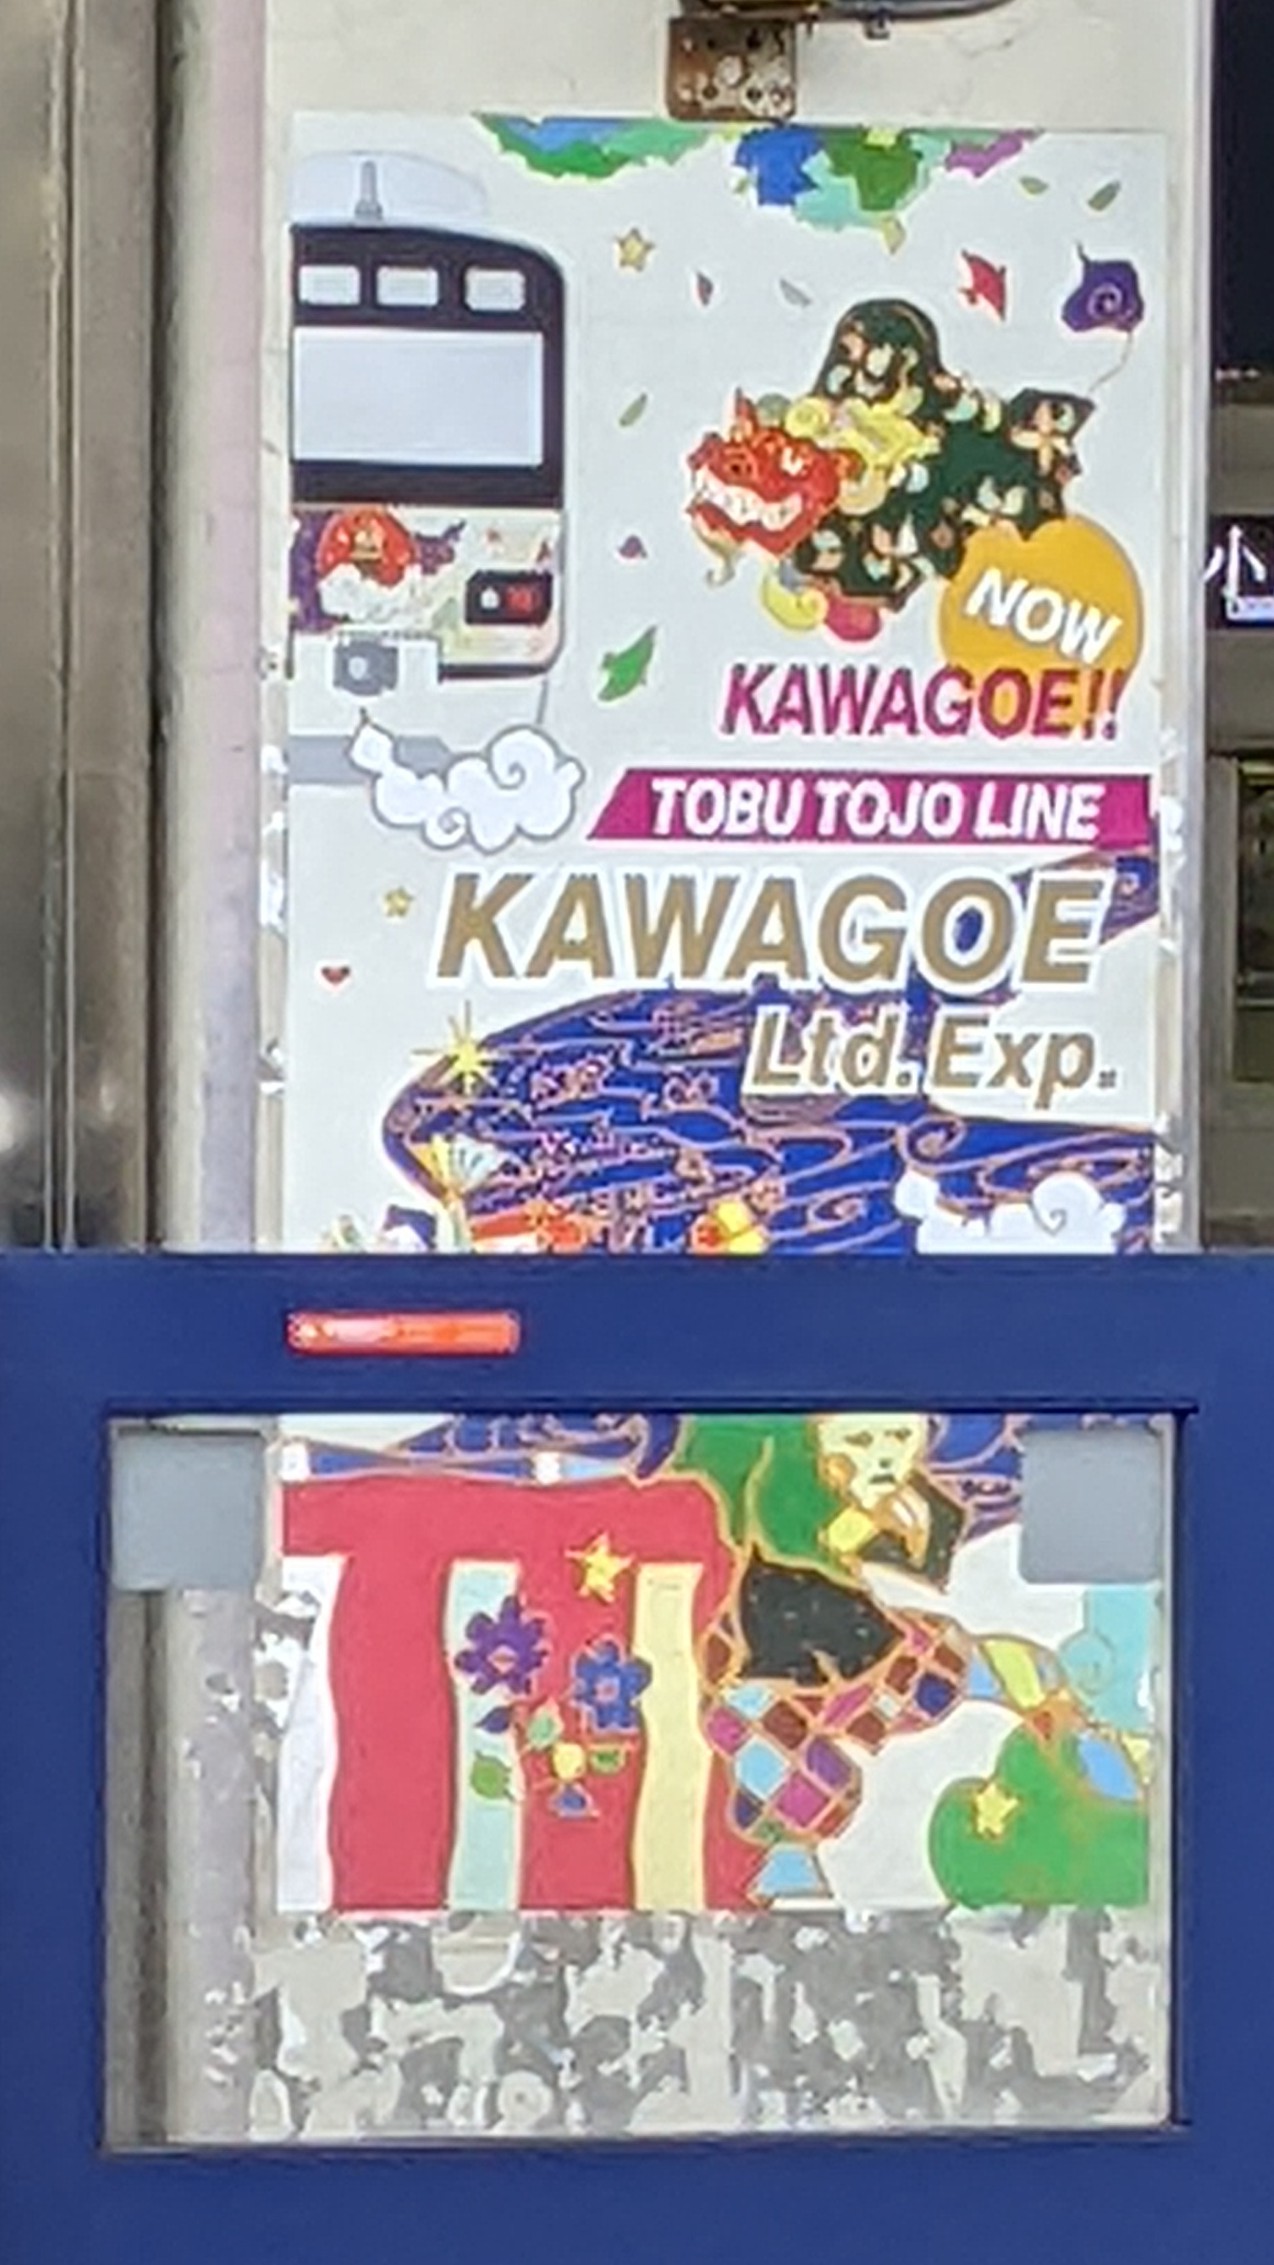 Kawagoe limited express sign